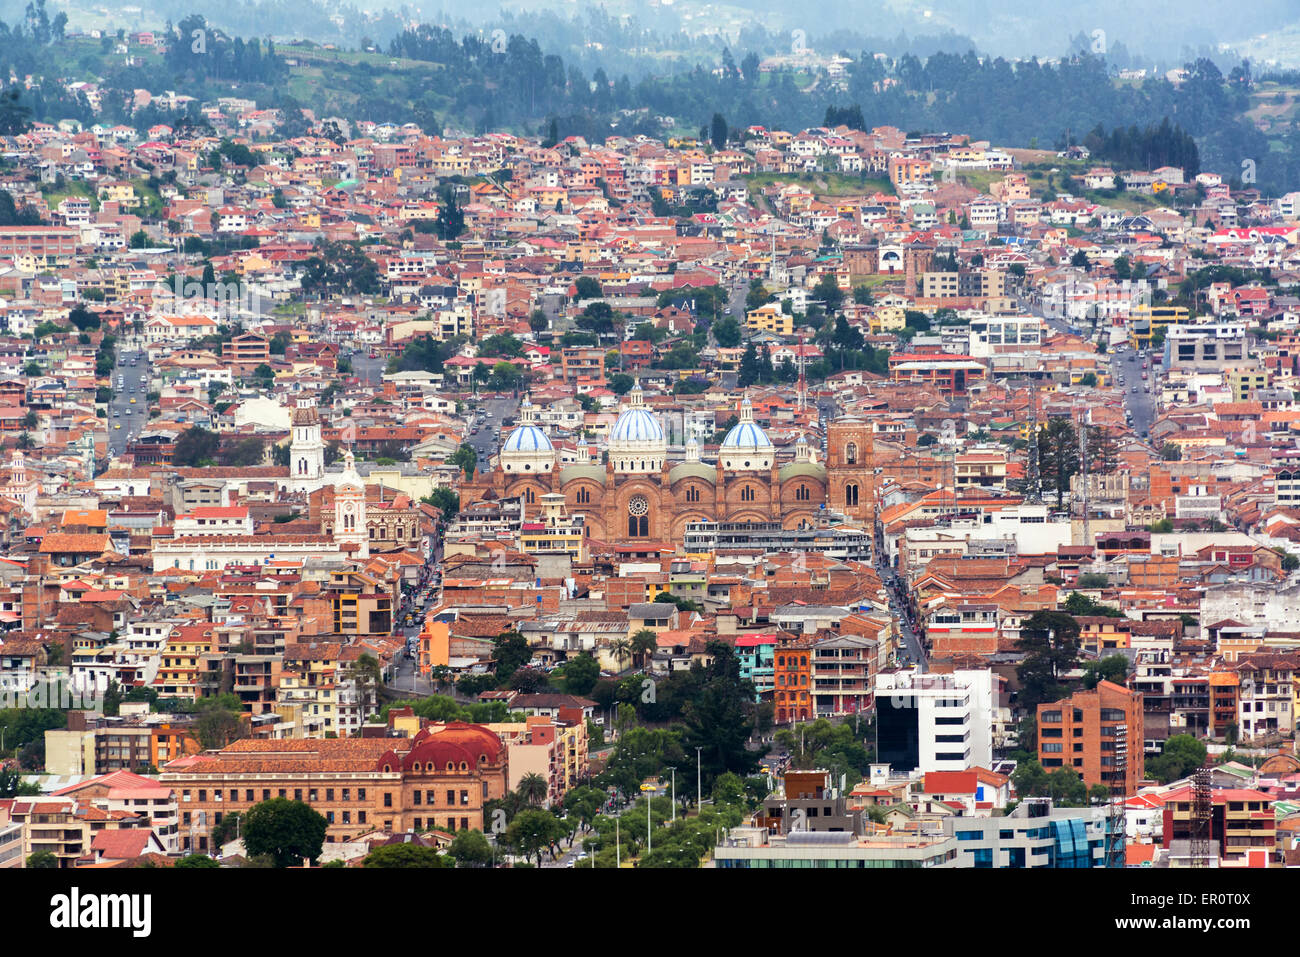 Stadtbild von Cuenca, Ecuador mit der Kathedrale in der Mitte des Bildes Stockfoto